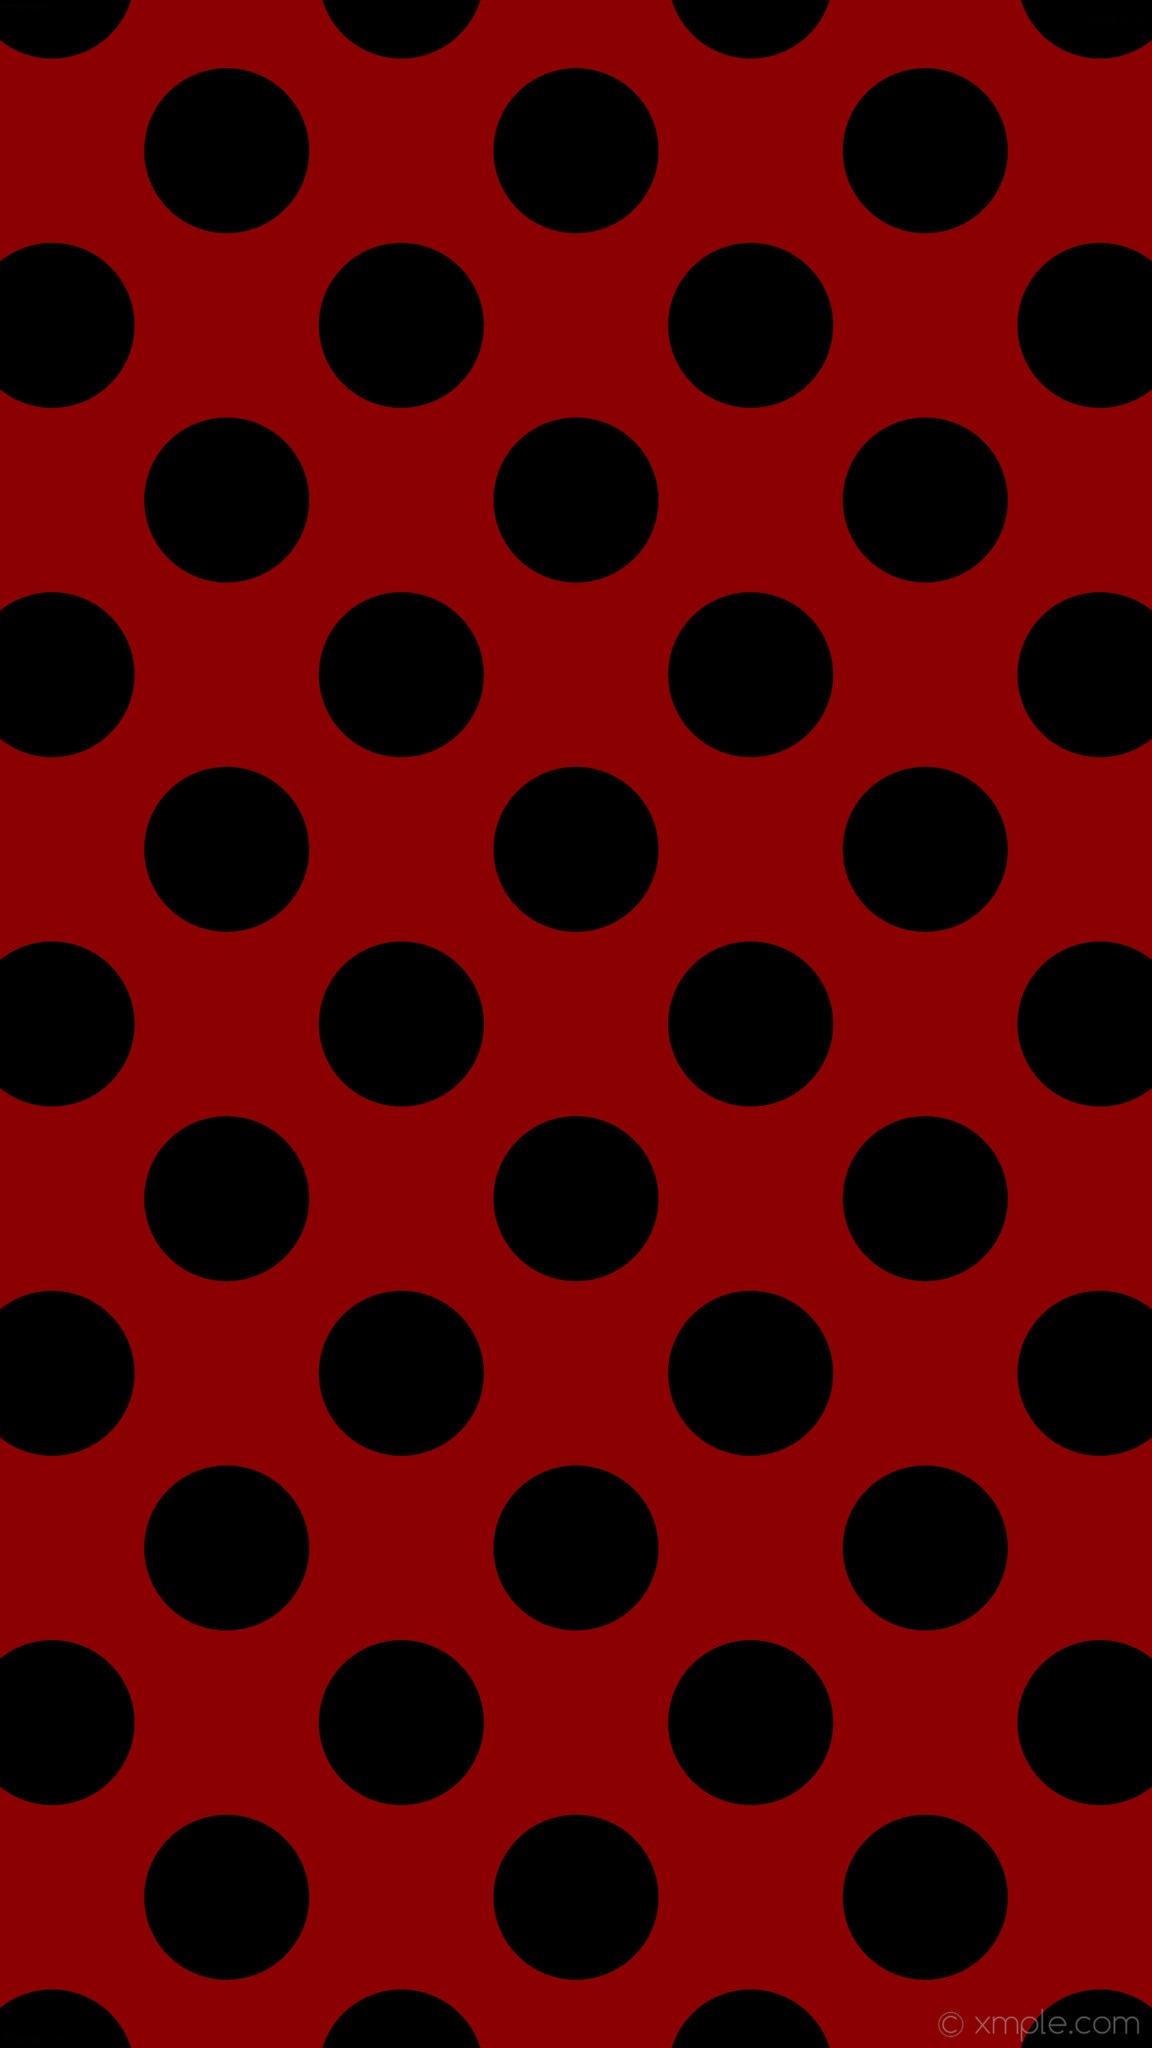 1152x2048 wallpaper red polka dots black spots dark red #8b0000 #000000 225Â° 165px  247px